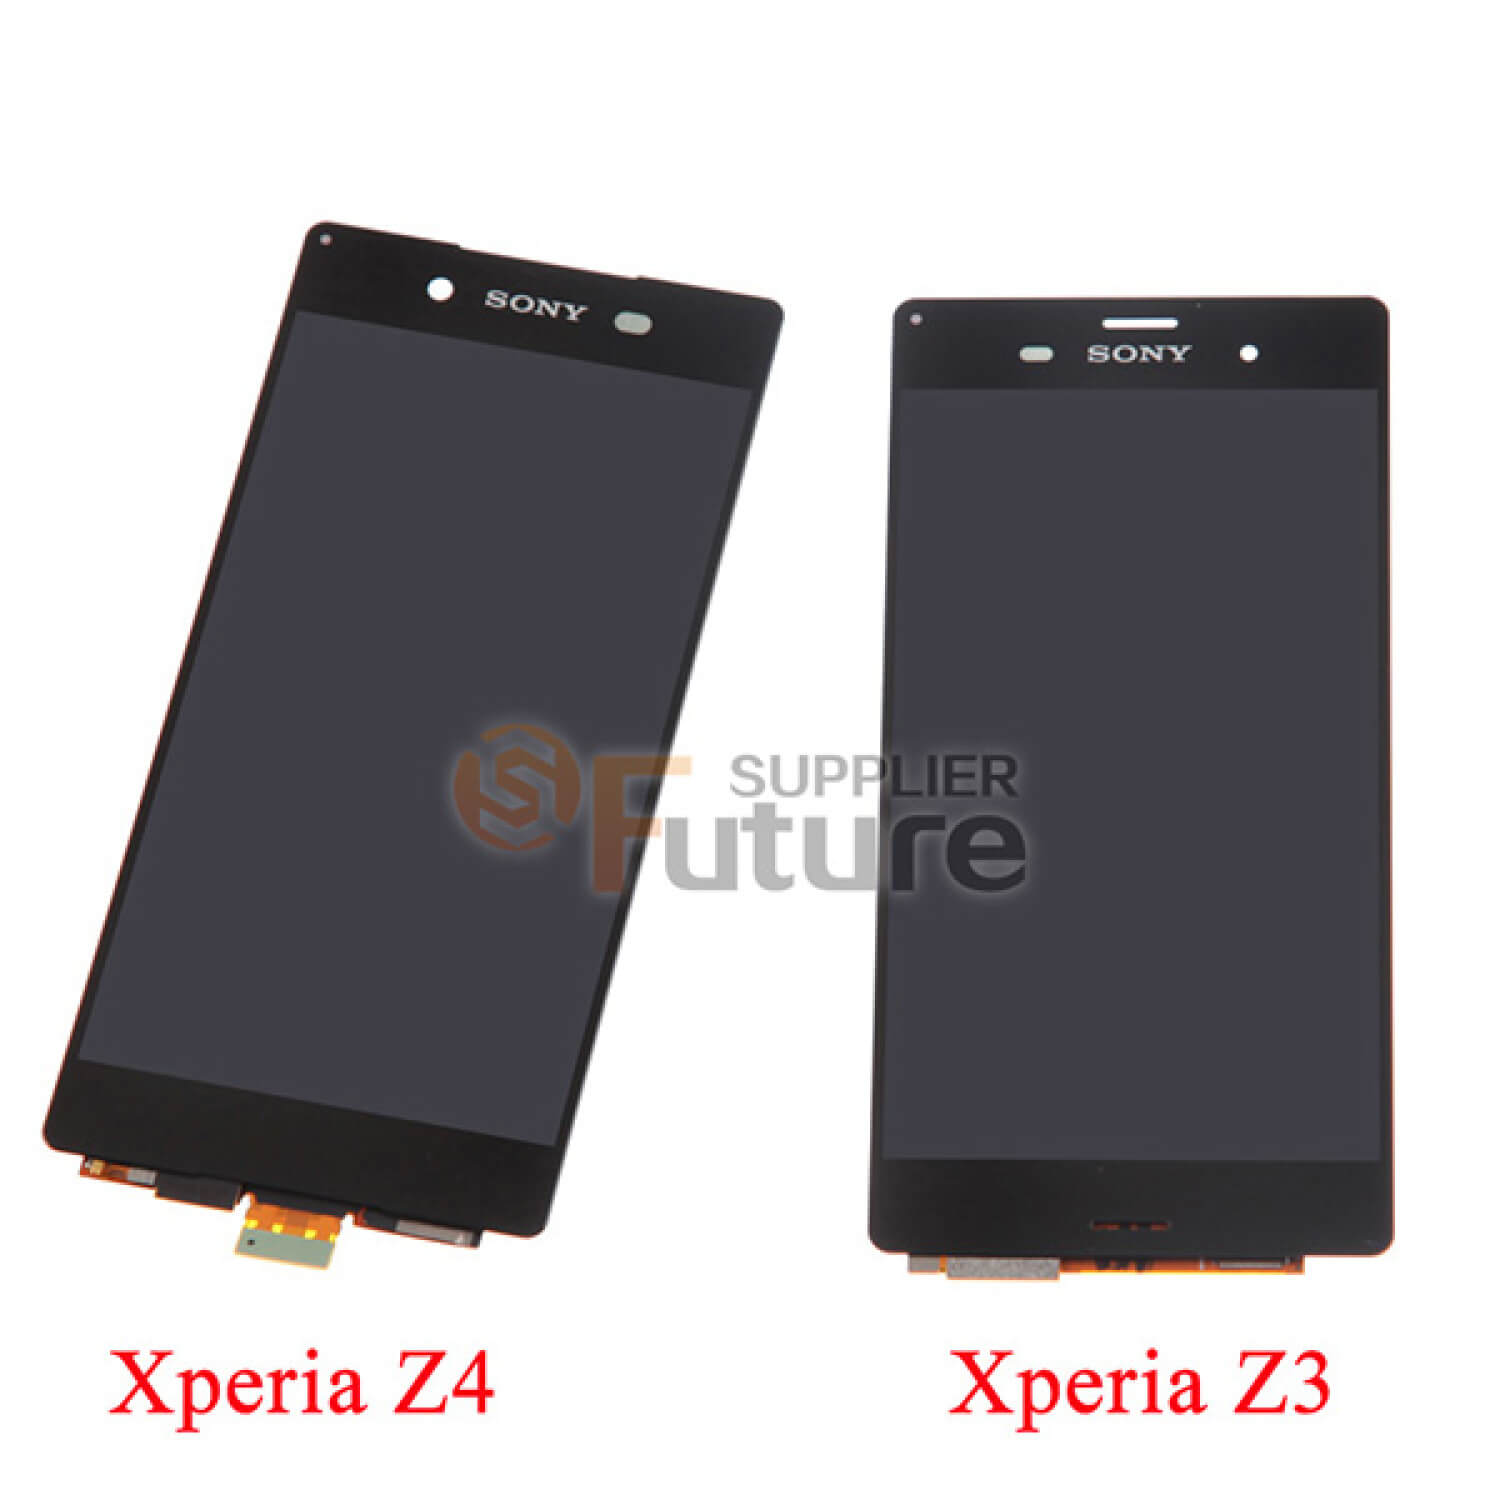 Каким будет экран Sony Xperia Z4? Фото.